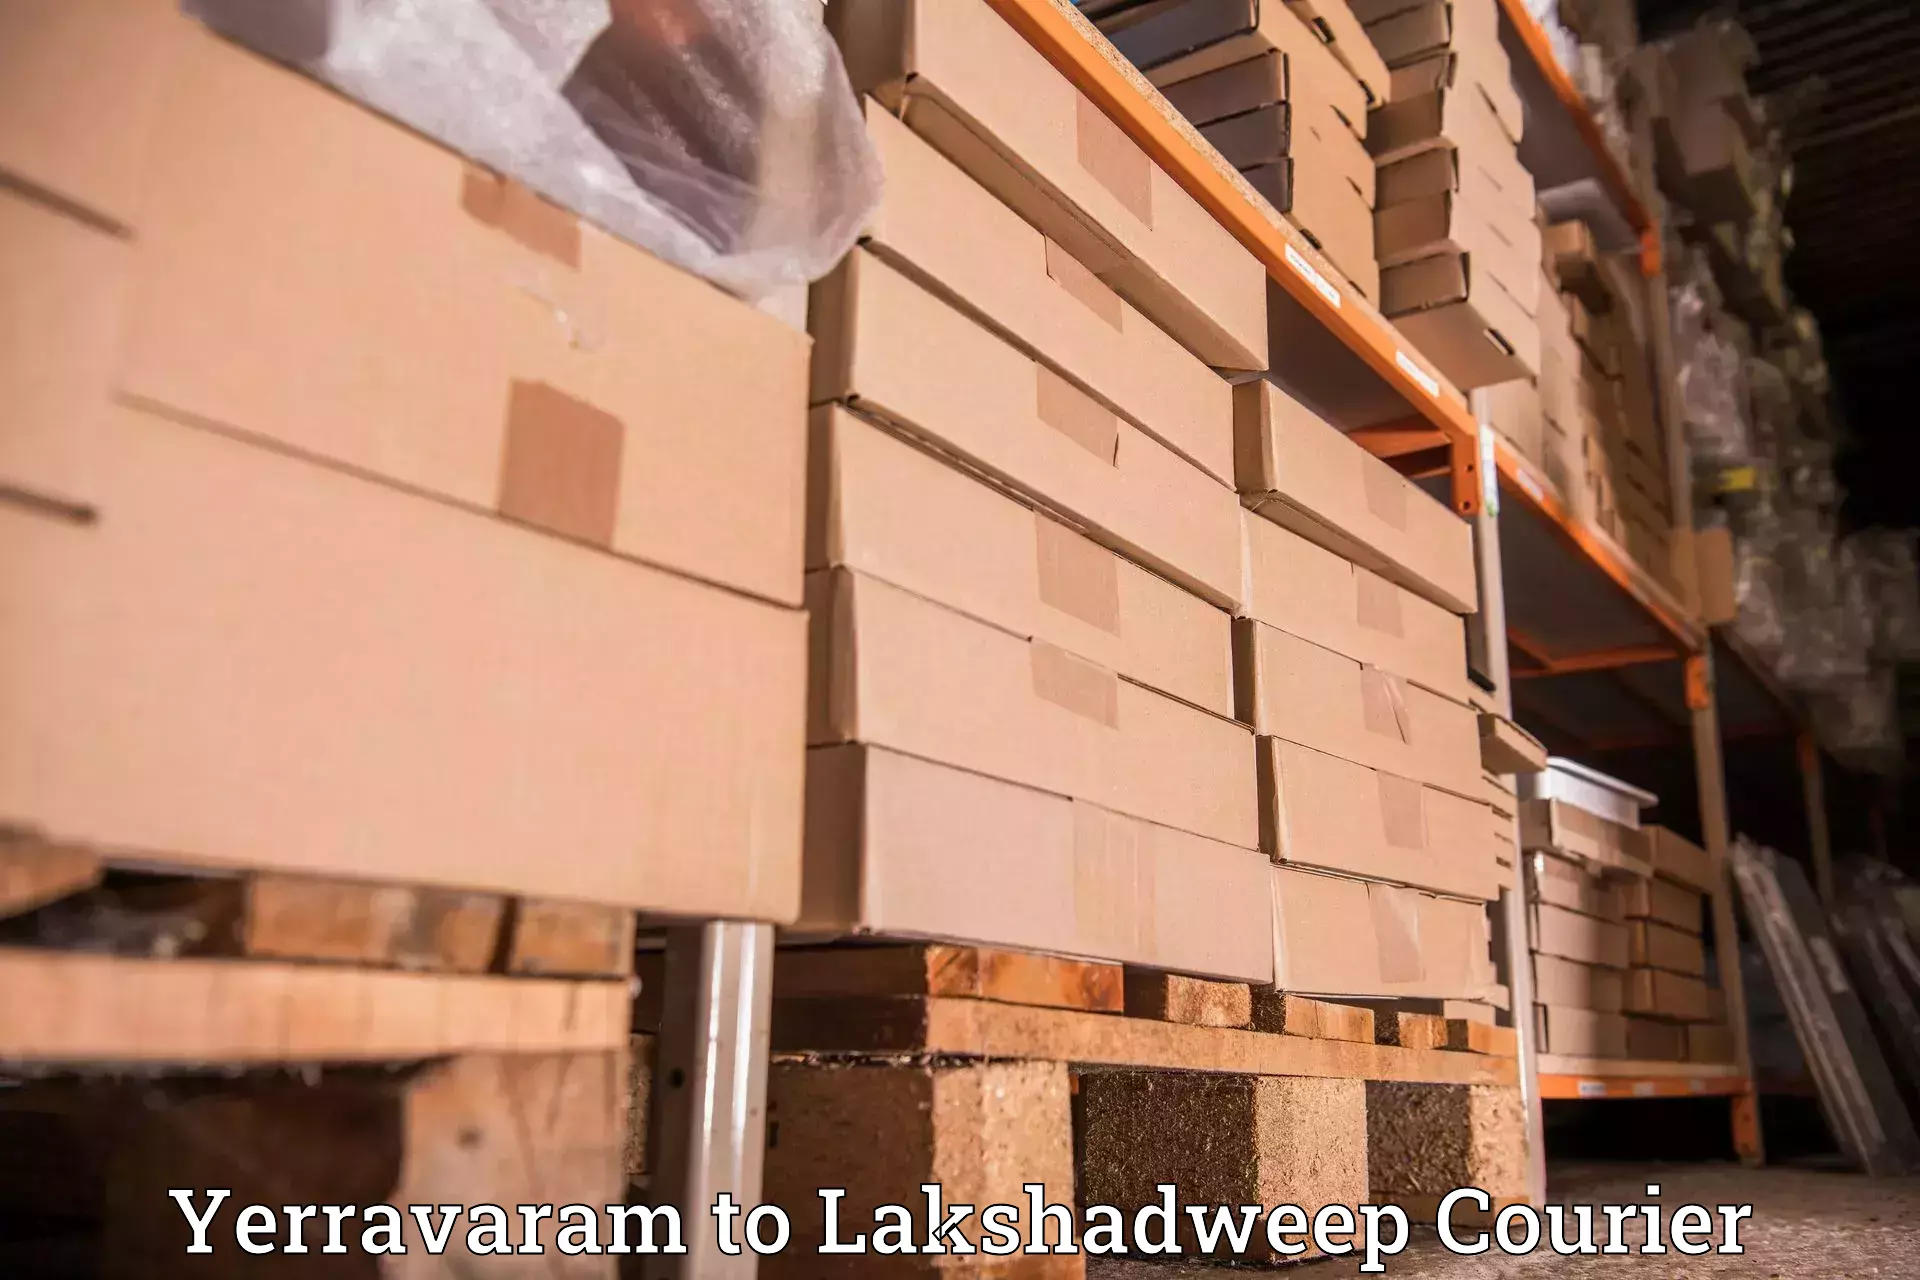 Courier service partnerships Yerravaram to Lakshadweep